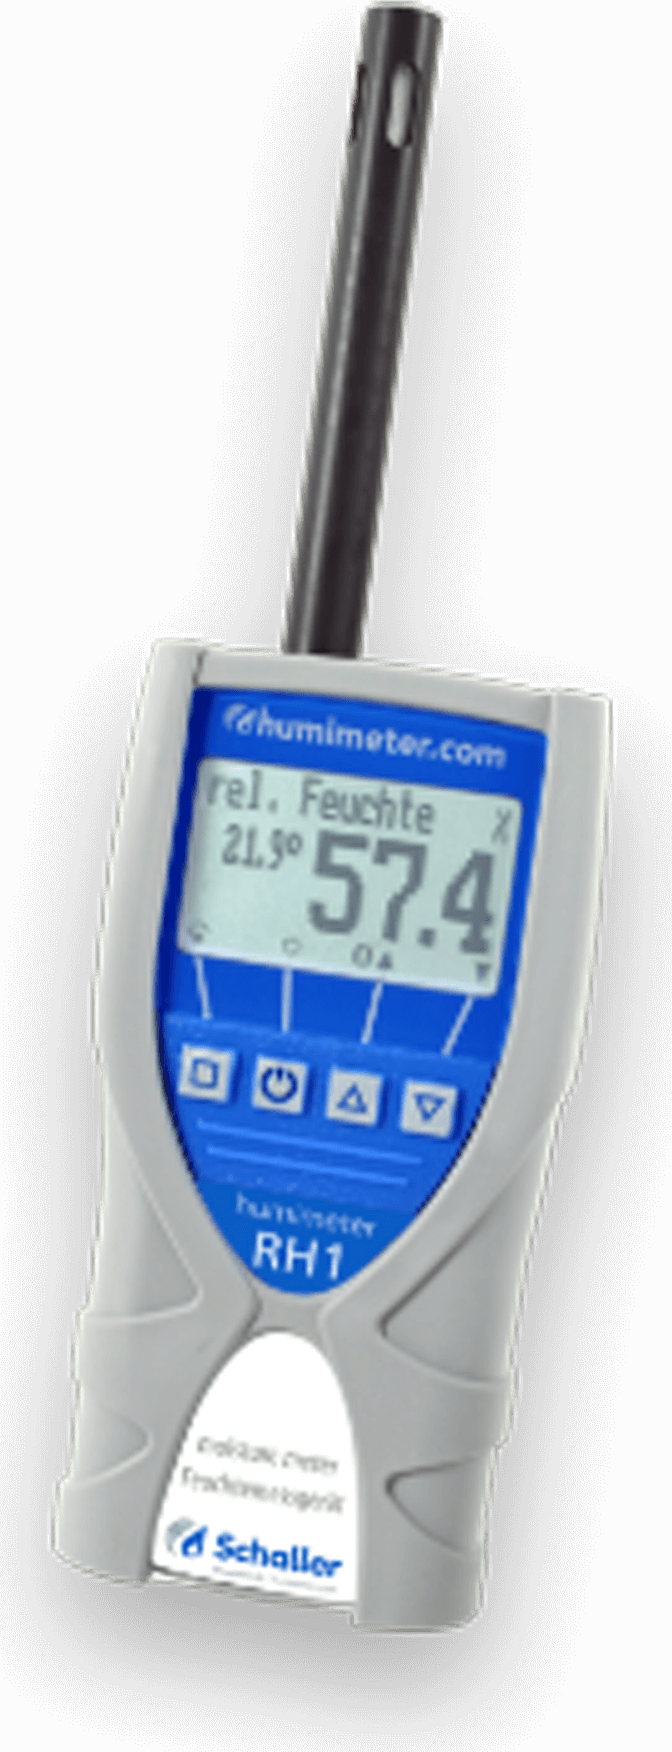 humimeter RH1 Luftfeuchtemessgerät zur Messung der relativen Luftfeuchtigkeit - mit Gummischutz